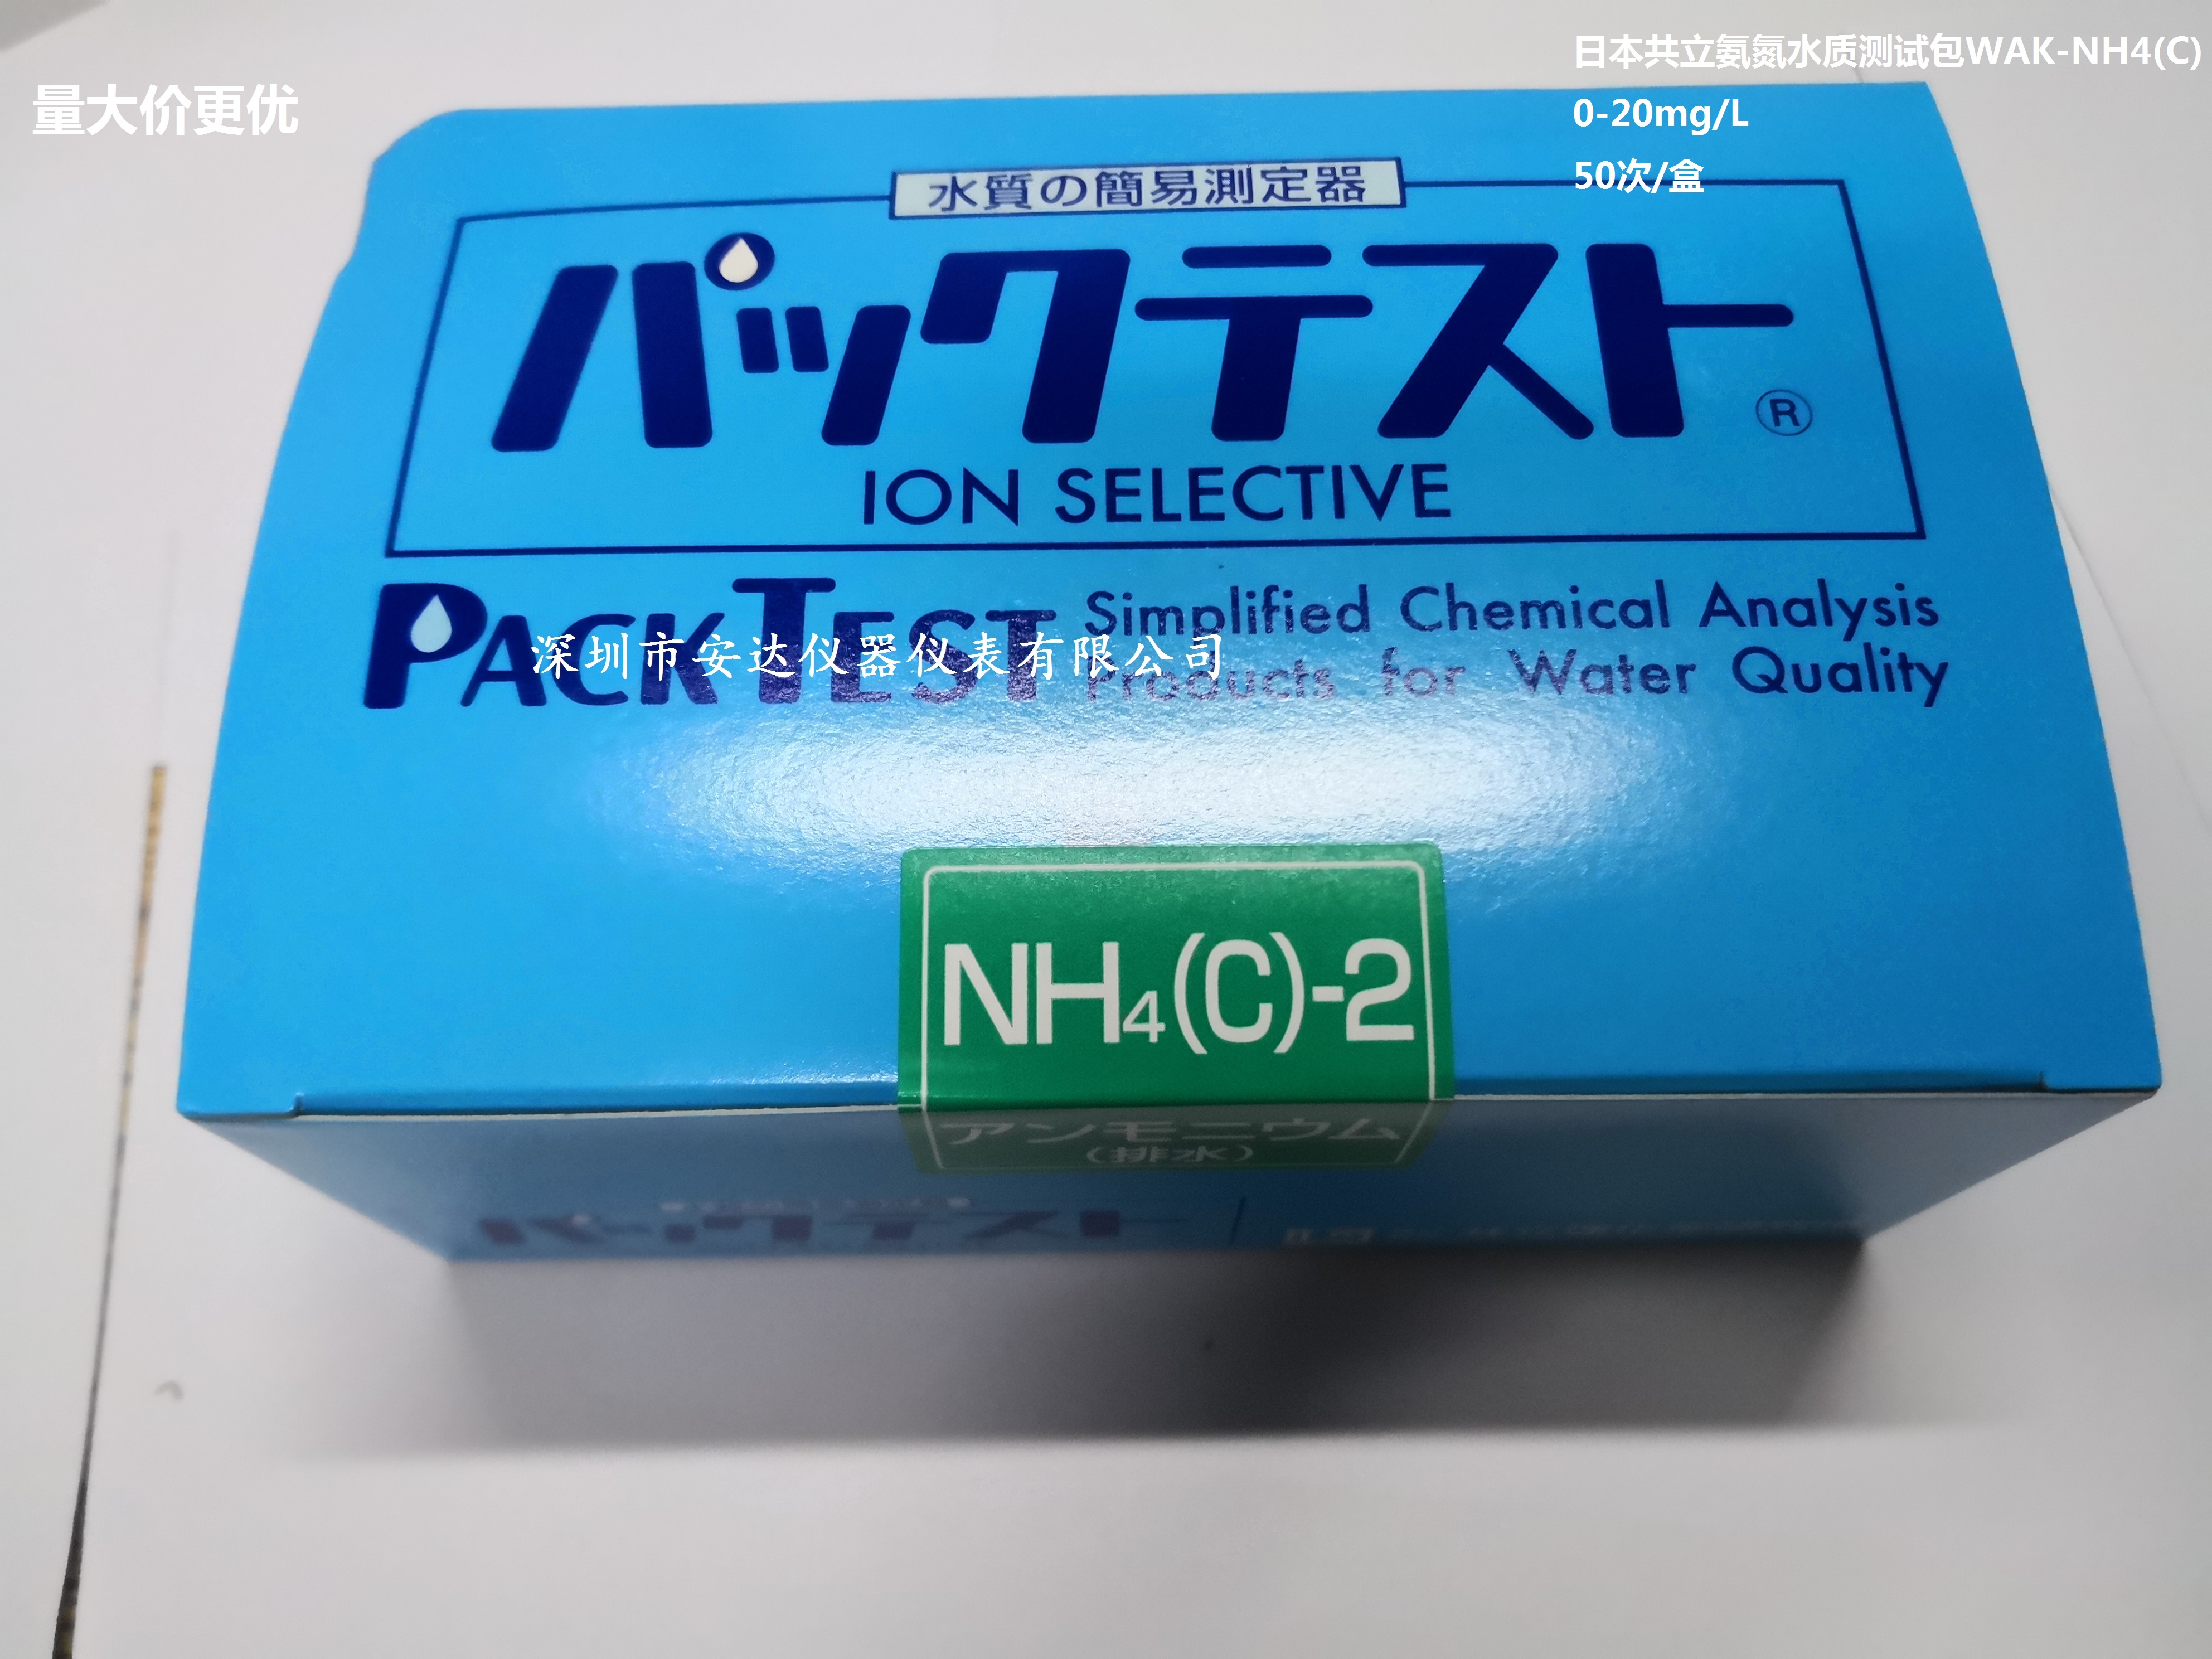 日本共立水质测试包PACKTEST WAK-NH(C)-2氨氮